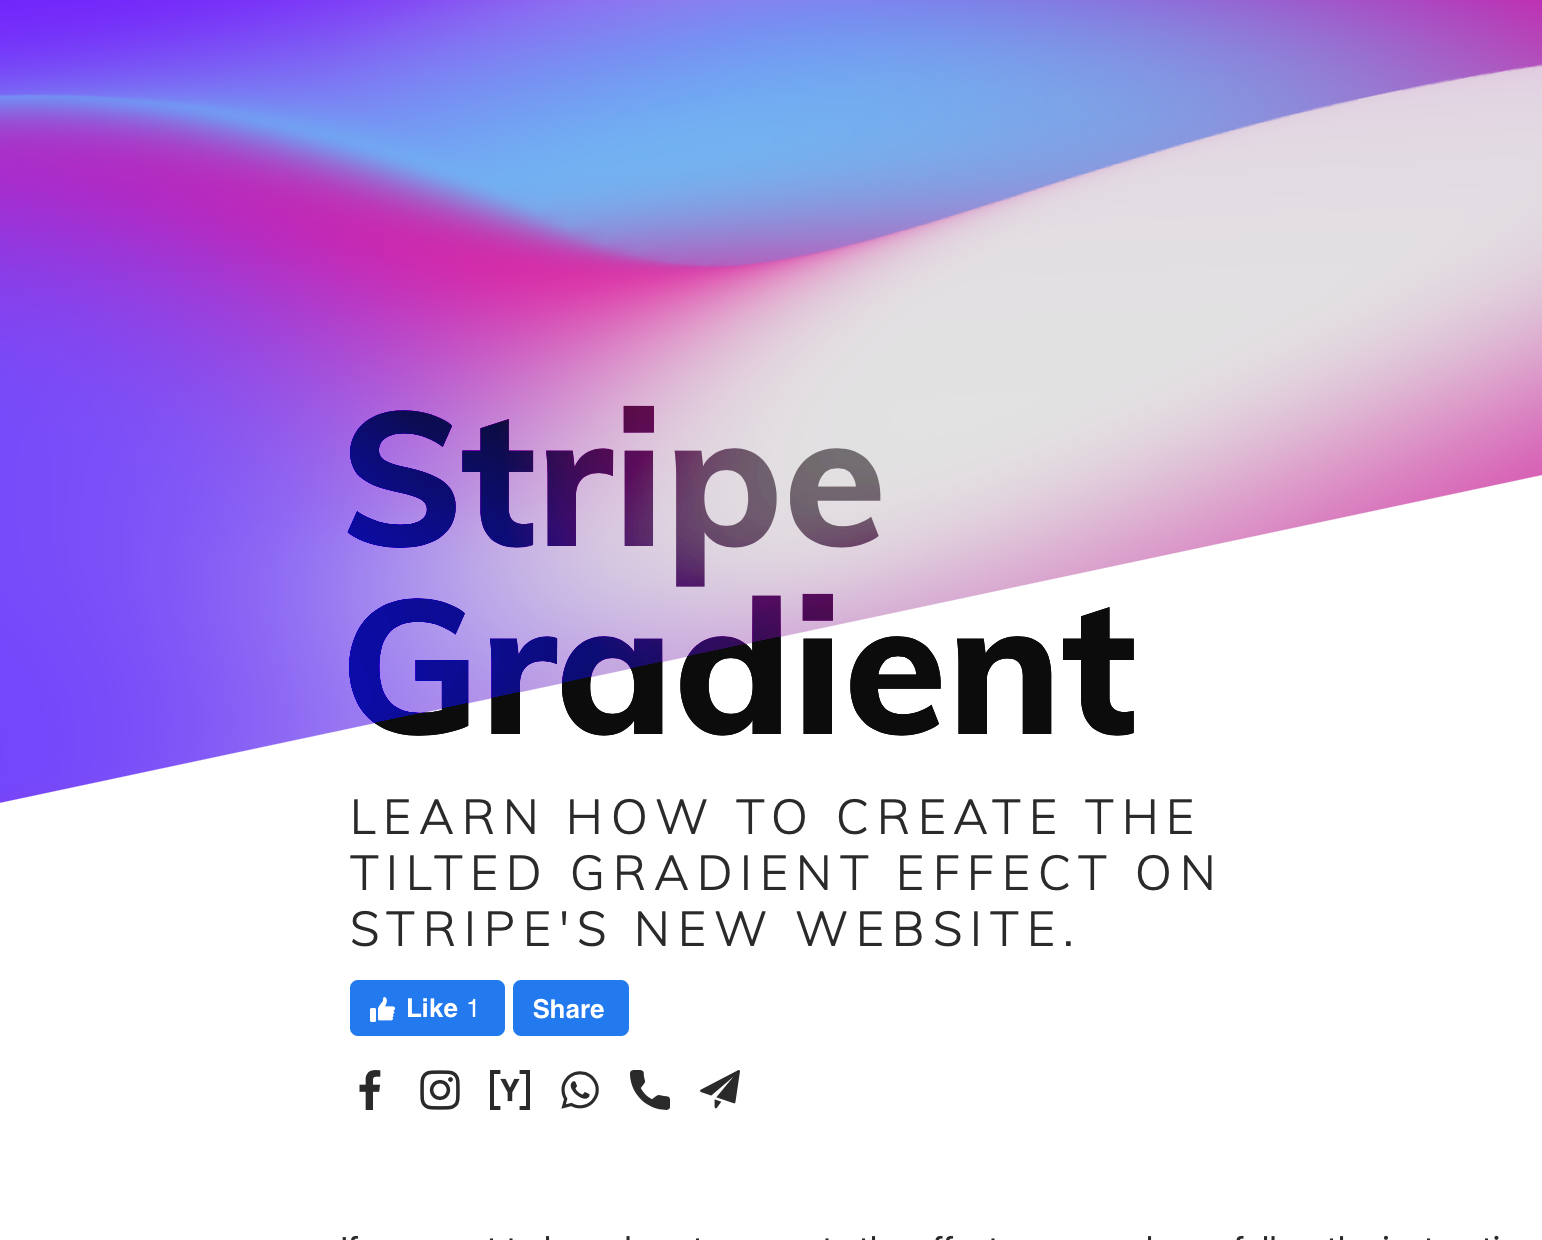 Stripe Website Gradient Effect Hiệu ứng stripe gradient sẽ giúp trang web của bạn trở nên độc đáo và thu hút hơn. Một số dải gradient sẽ tạo ra hiệu ứng chuyển động, kết hợp với màu sắc đẹp mắt để trang web của bạn trở nên thú vị và đầy sức sống.